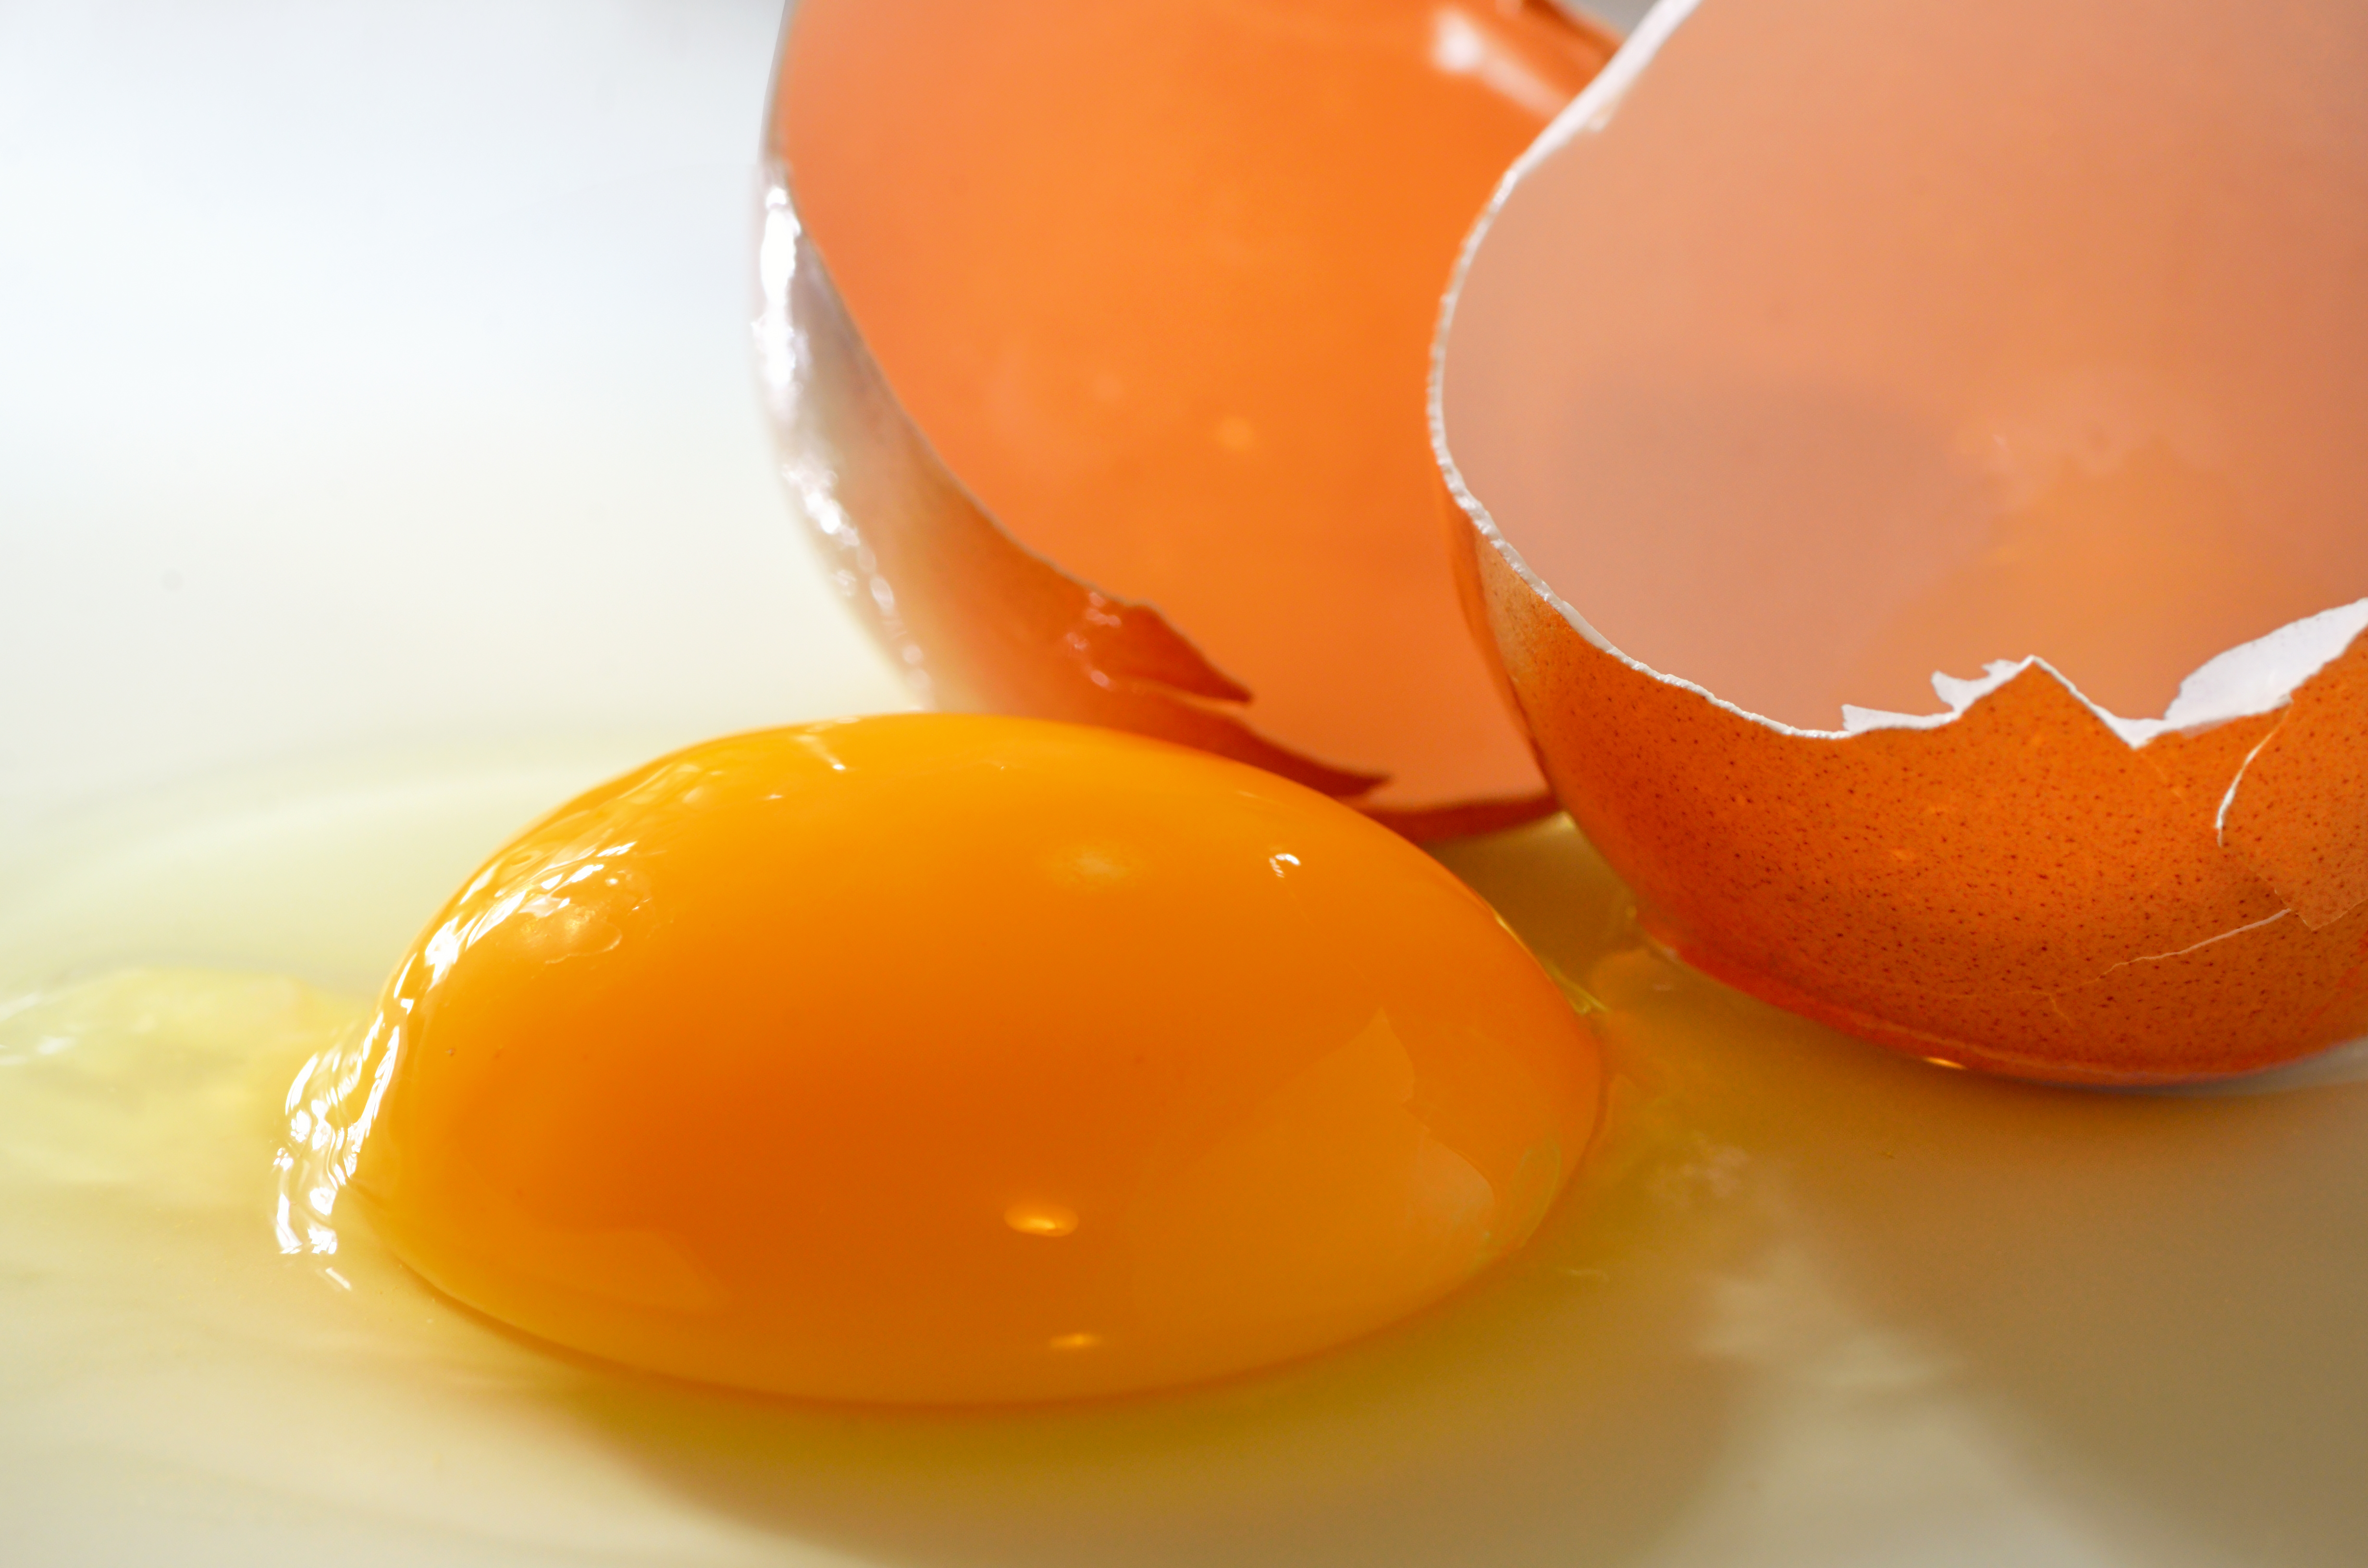 Como o ovo se forma dentro da galinha?